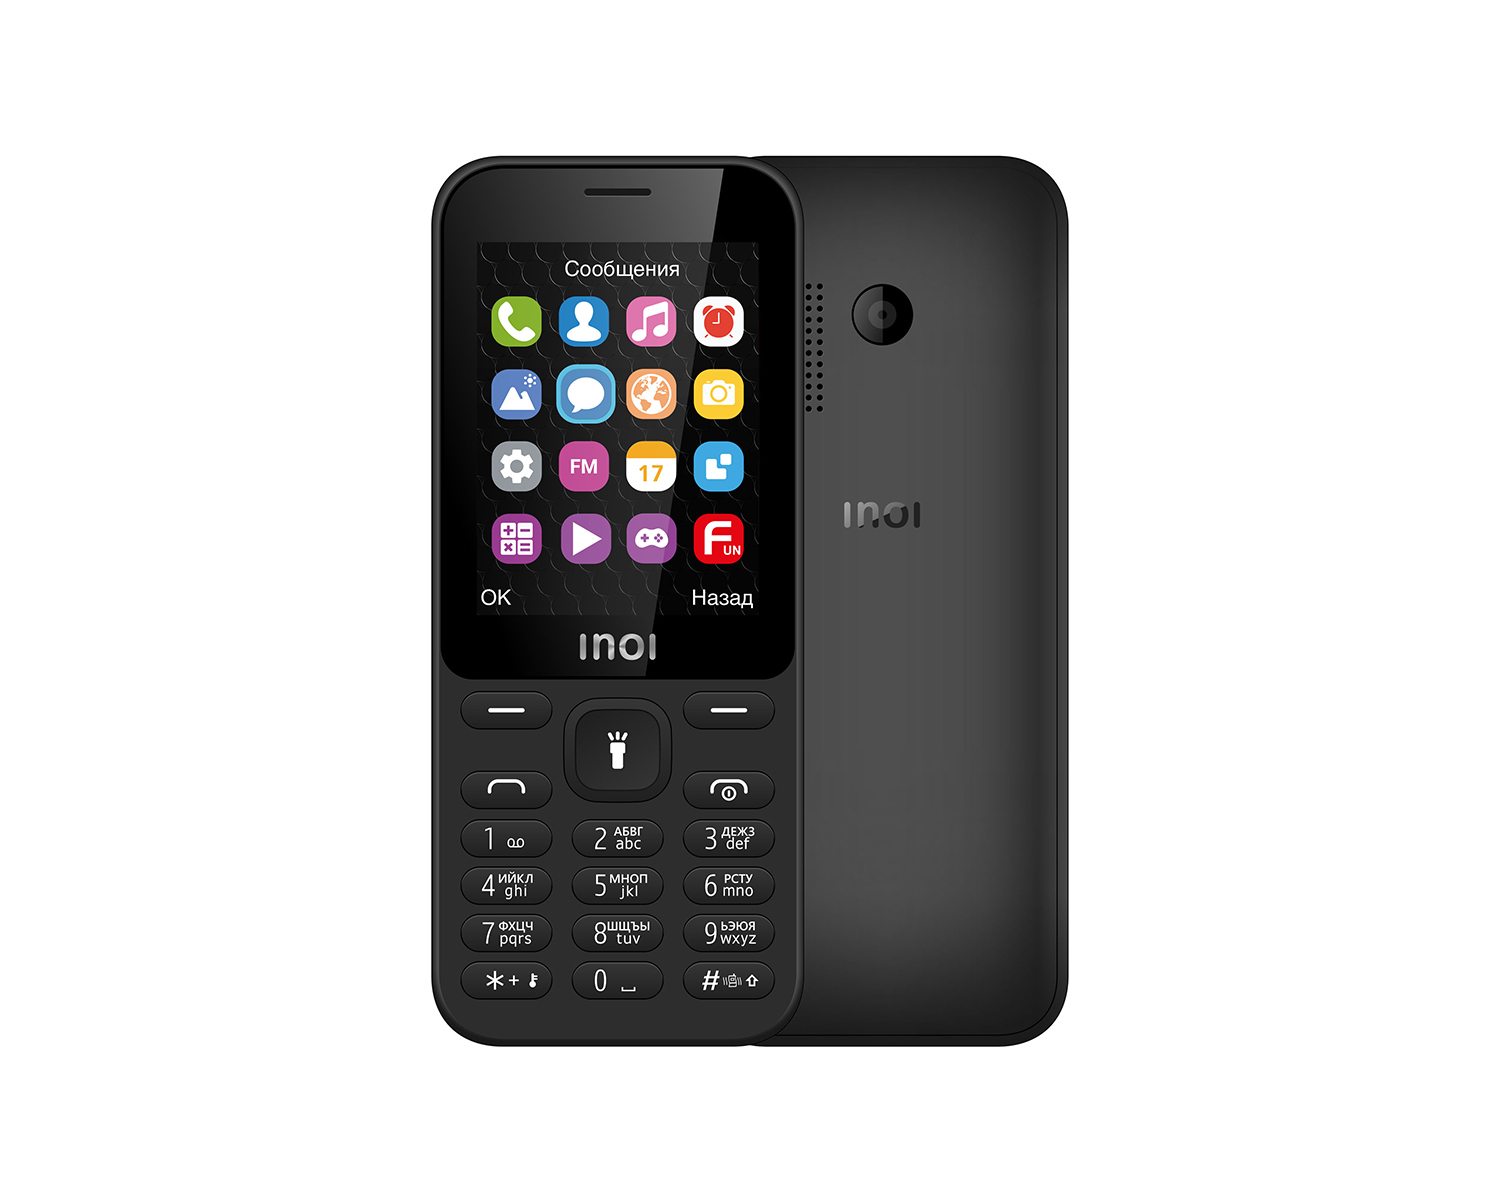 Мобильный телефон INOI 241 Black цена и фото